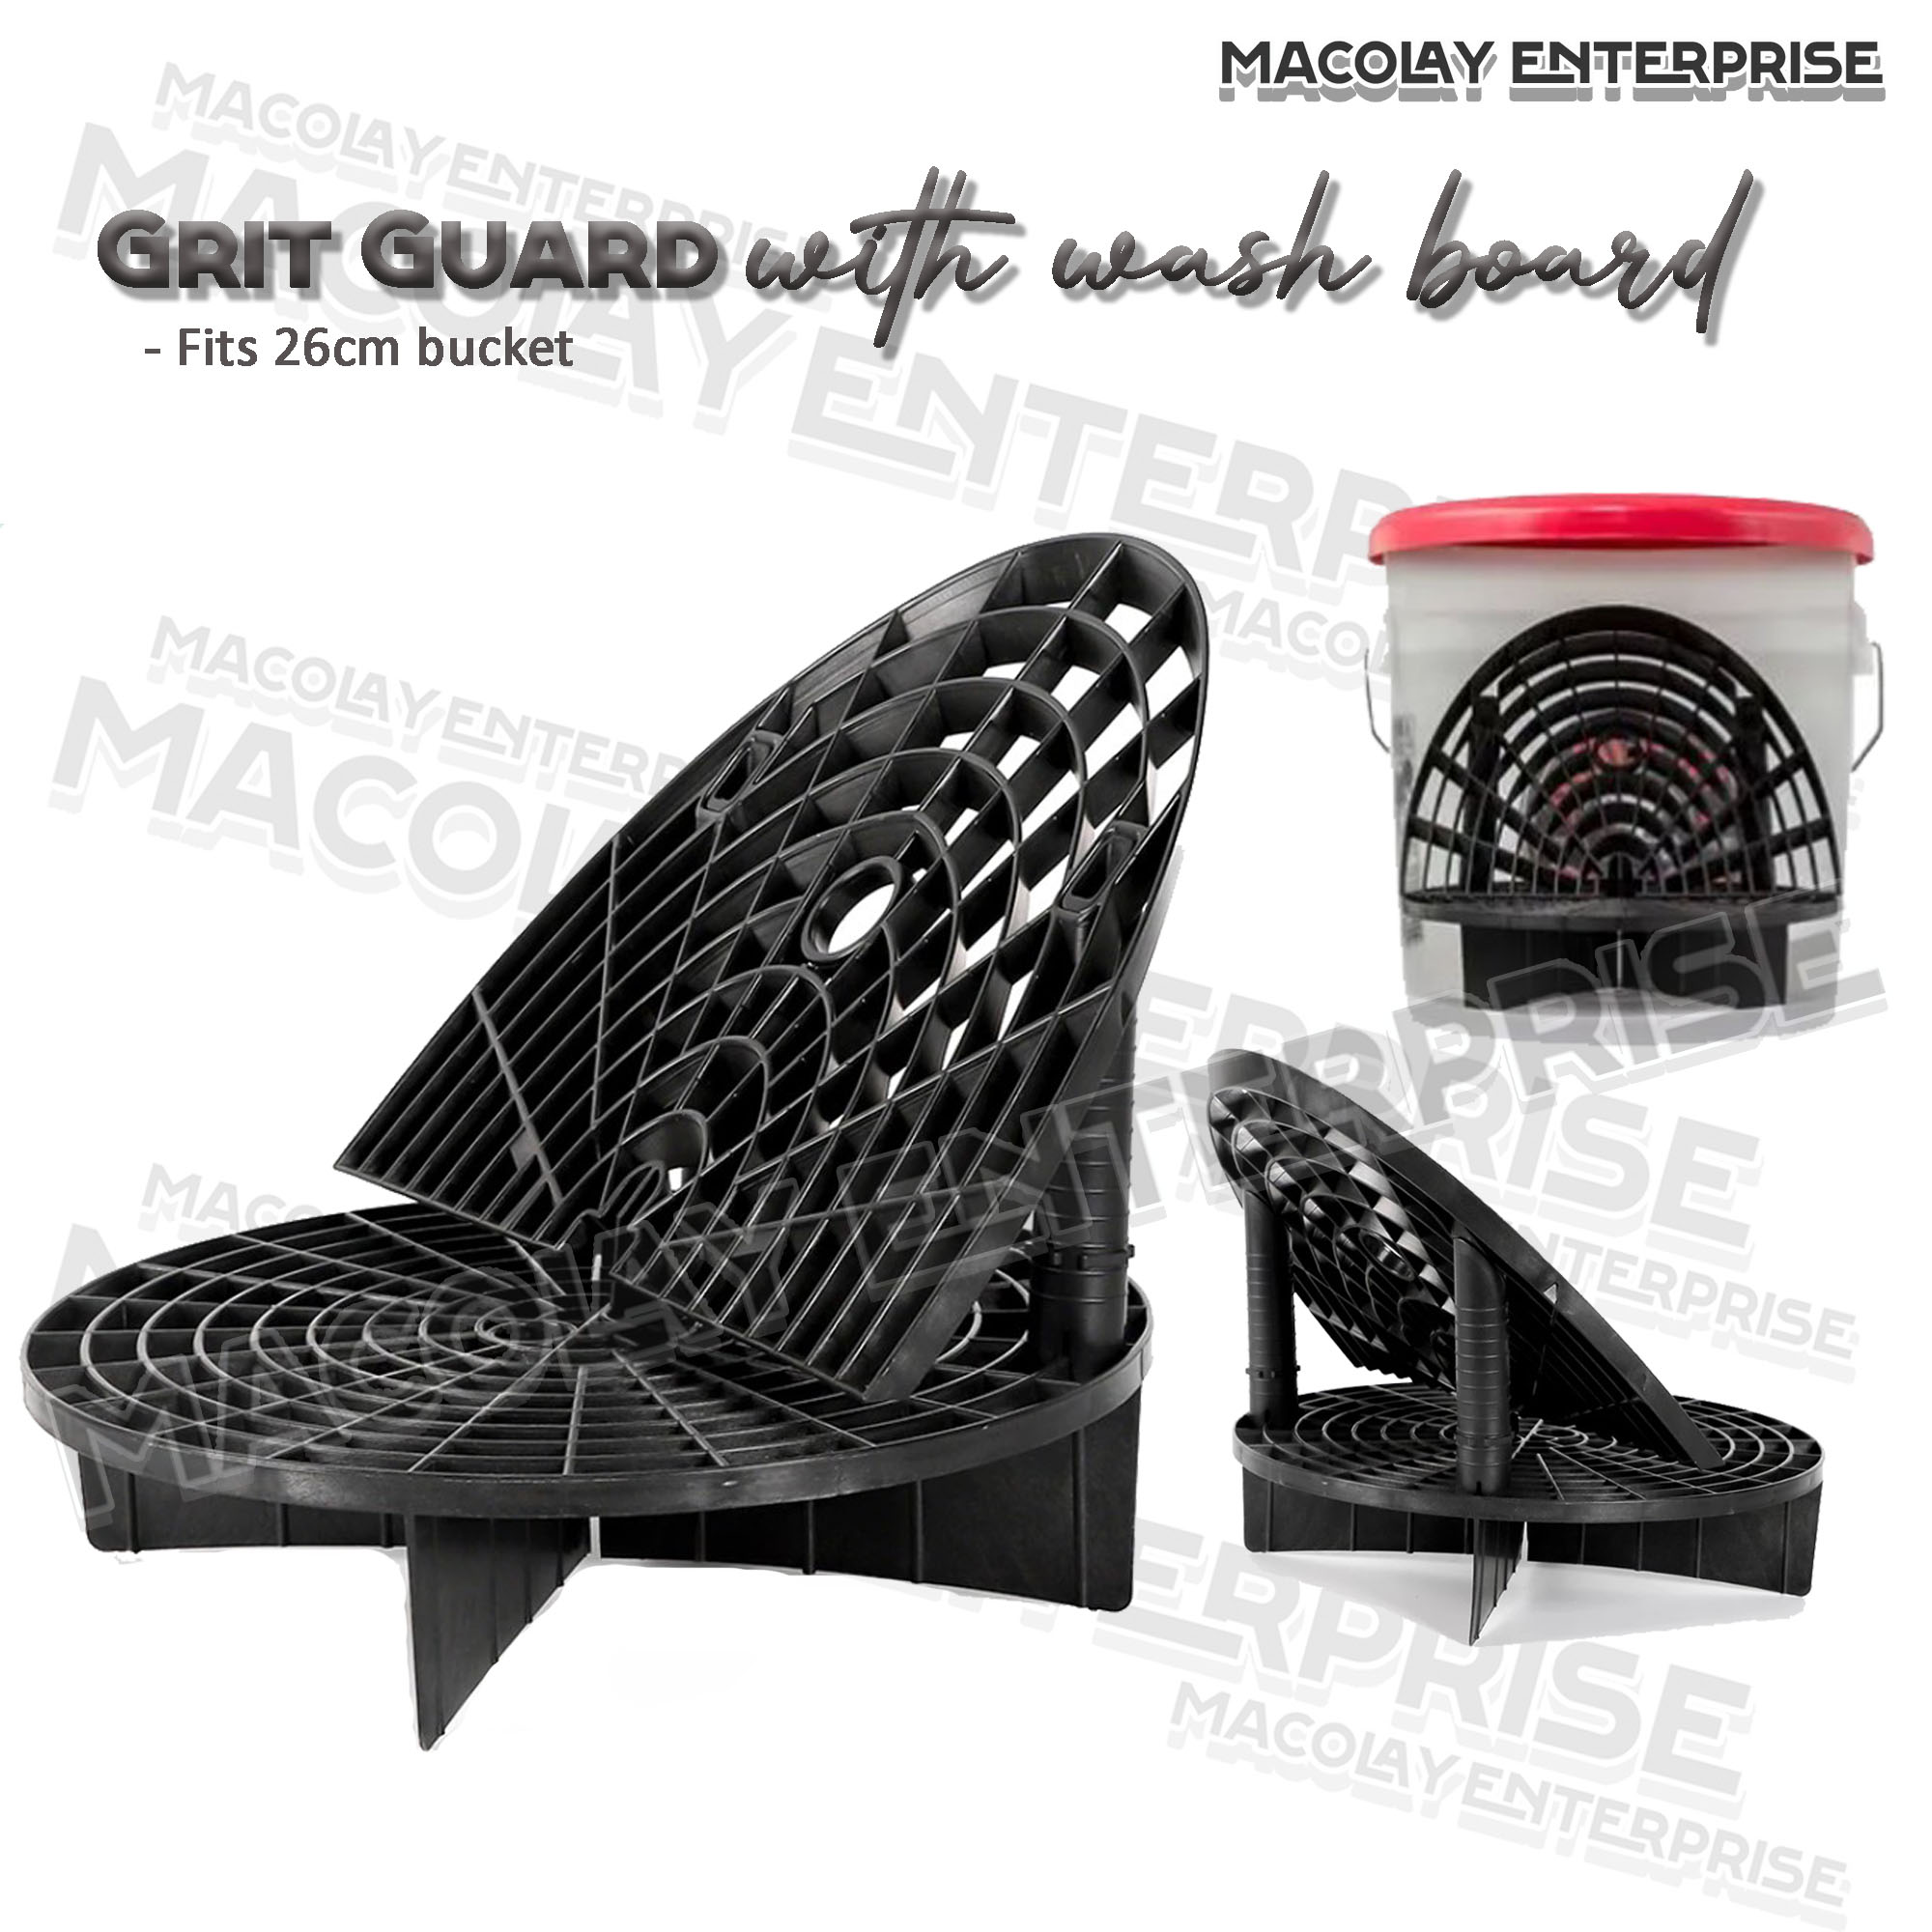 Grit Guard Wash Board